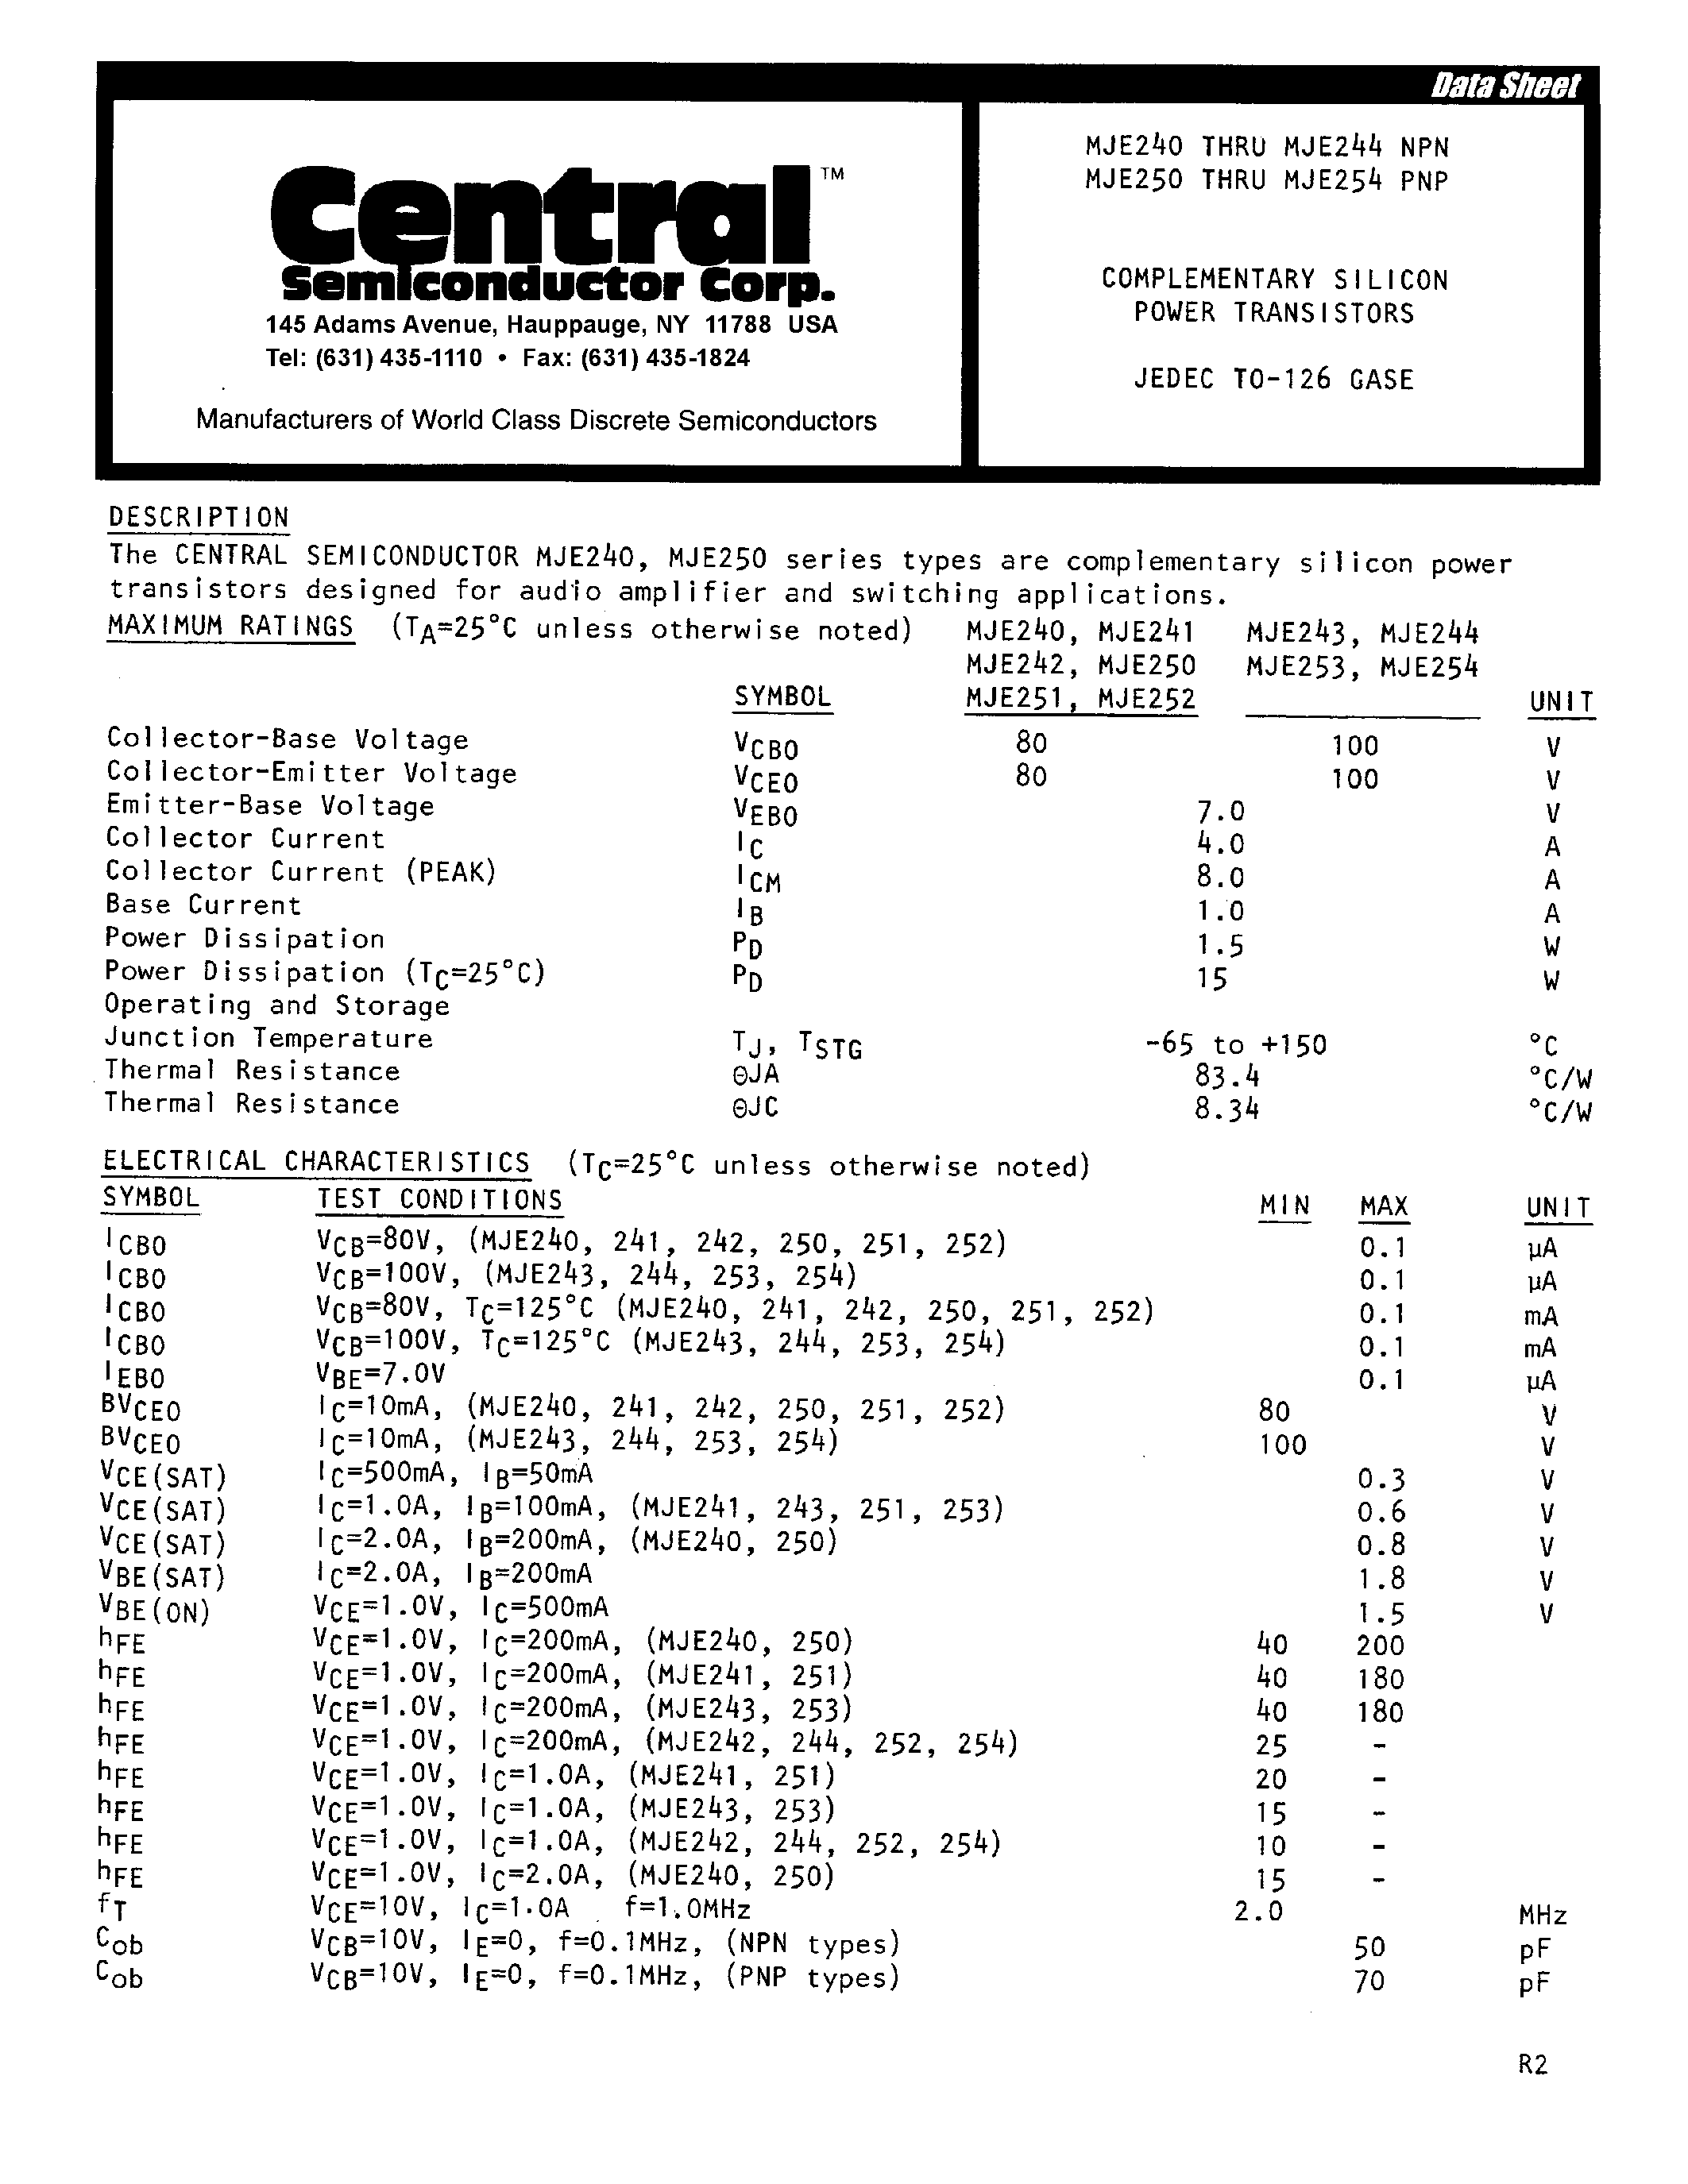 Datasheet MJE240 - (MJE250 - MJE254 / MJE240 - MJE244) COMPLEMENTARY SILICON POWER TRANSISTORS page 1